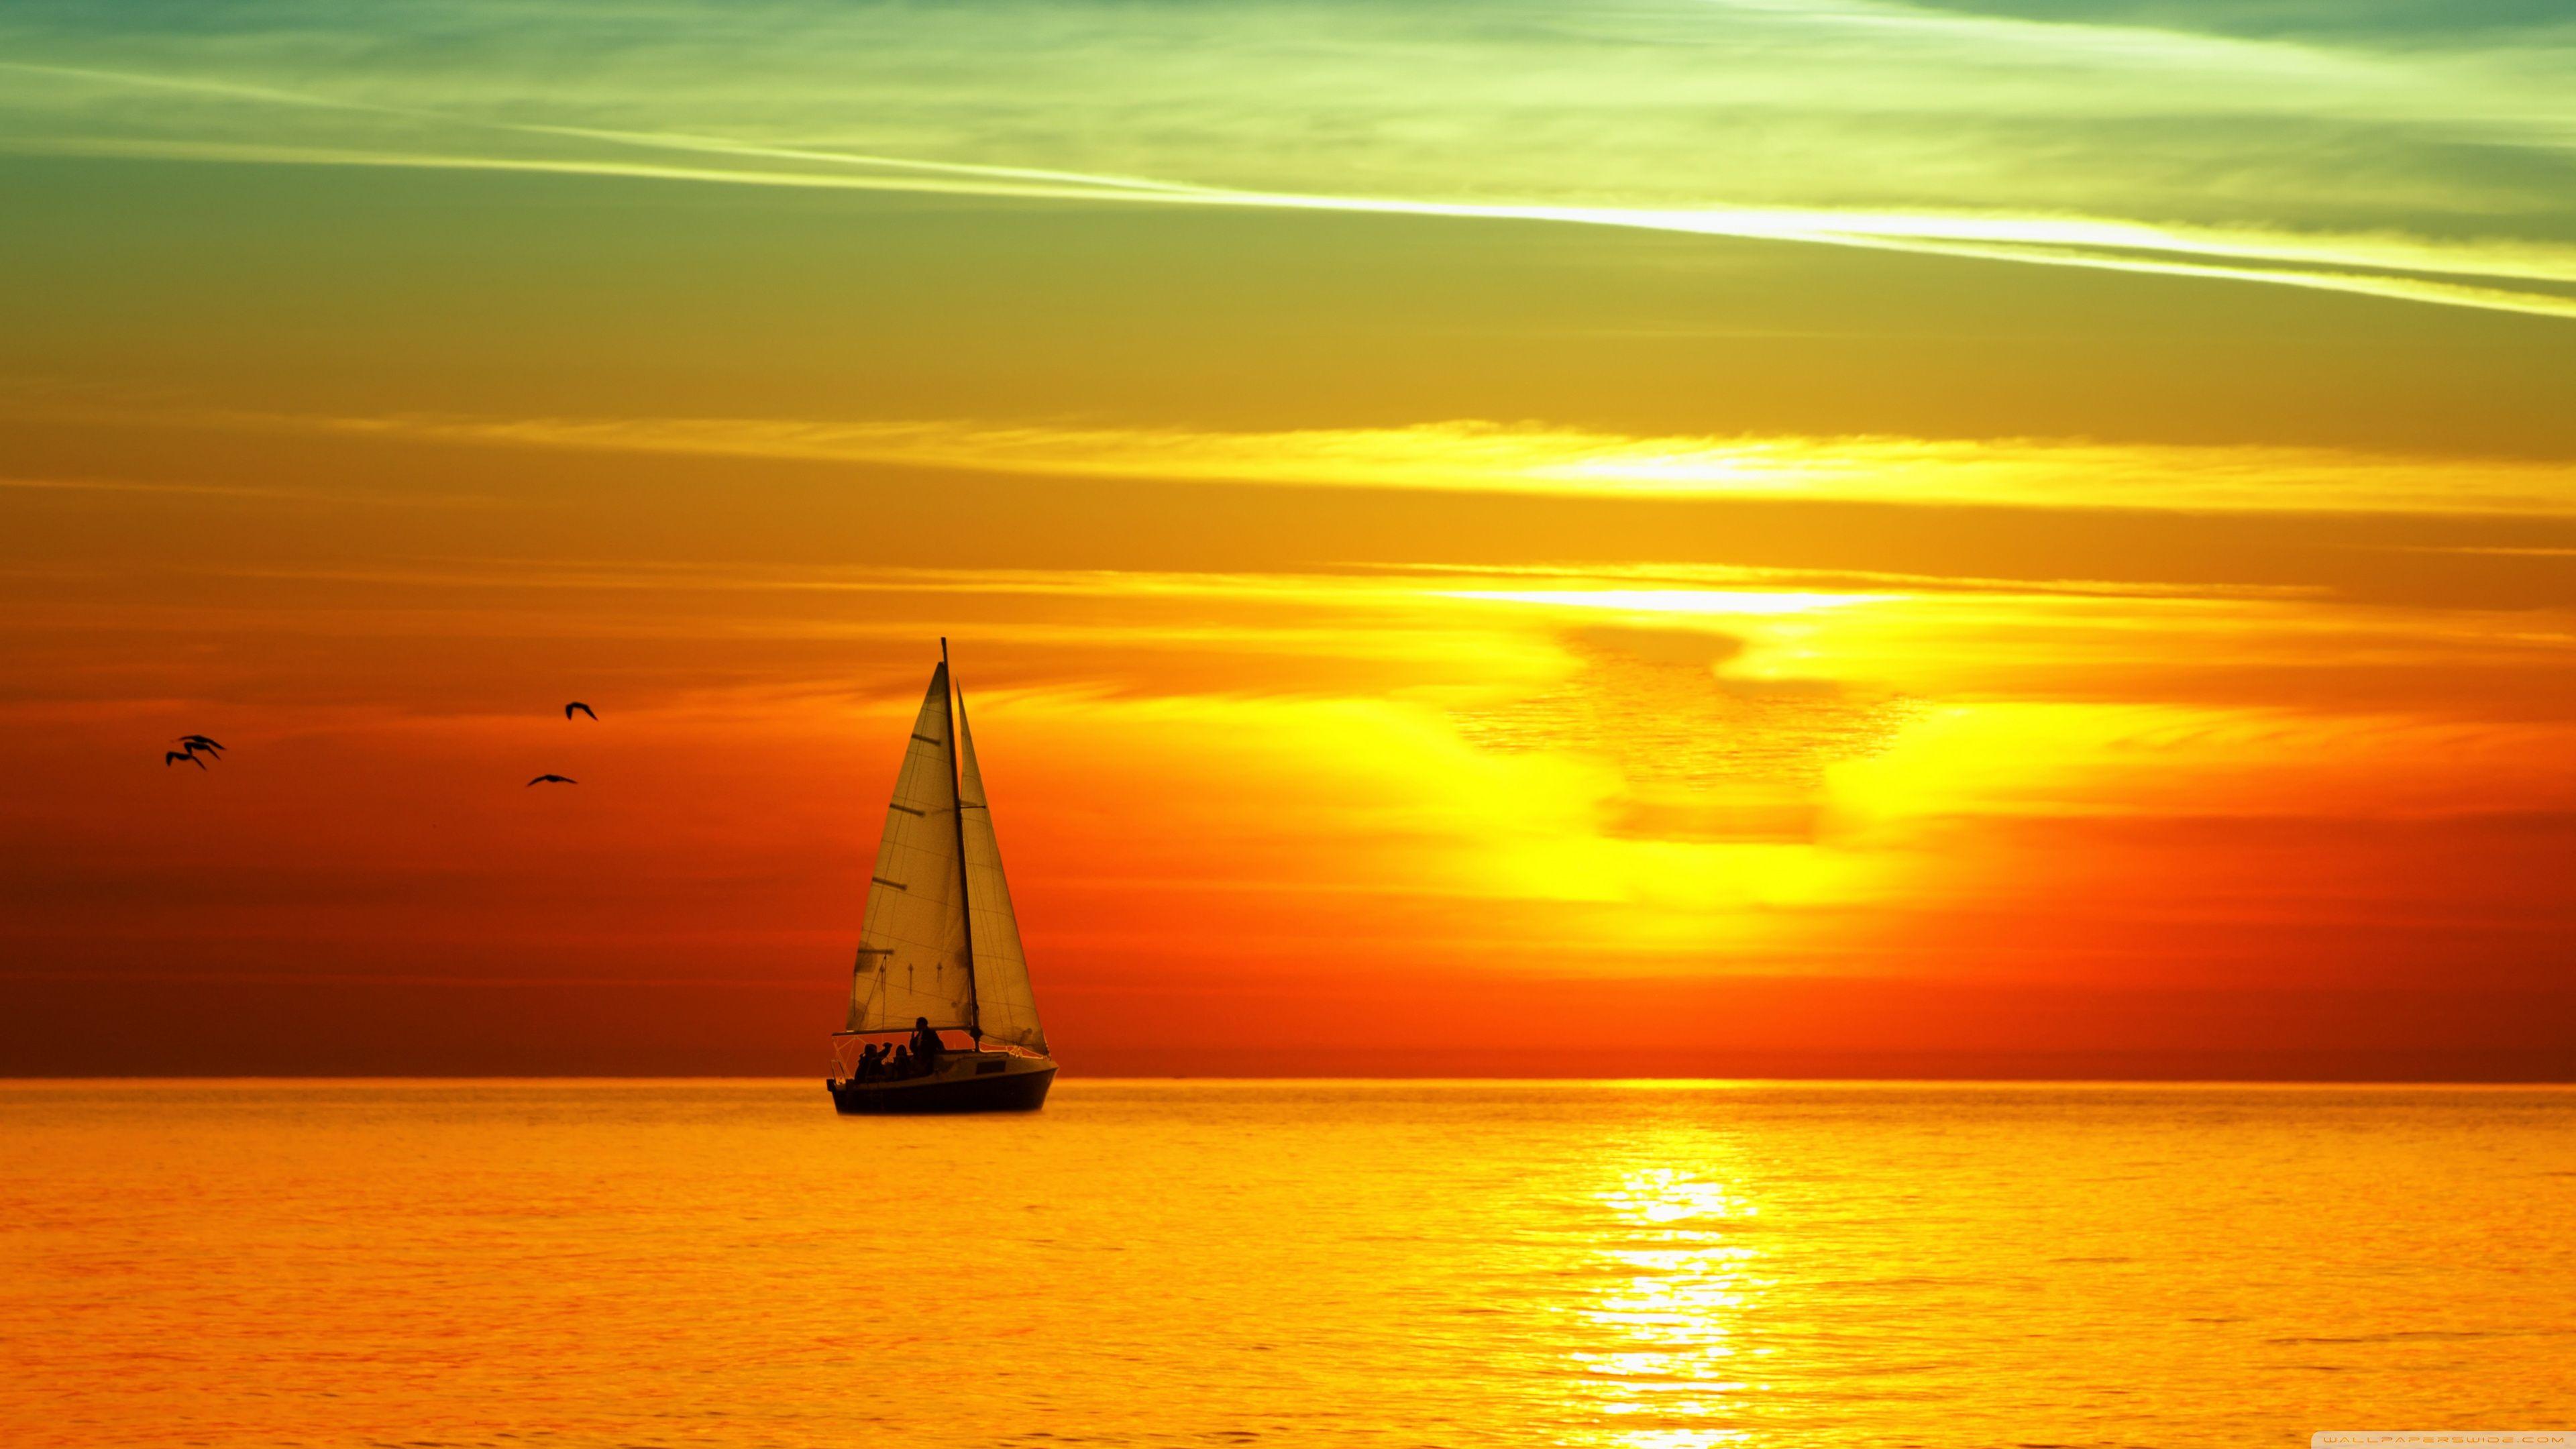 photos of sailboats at sunset